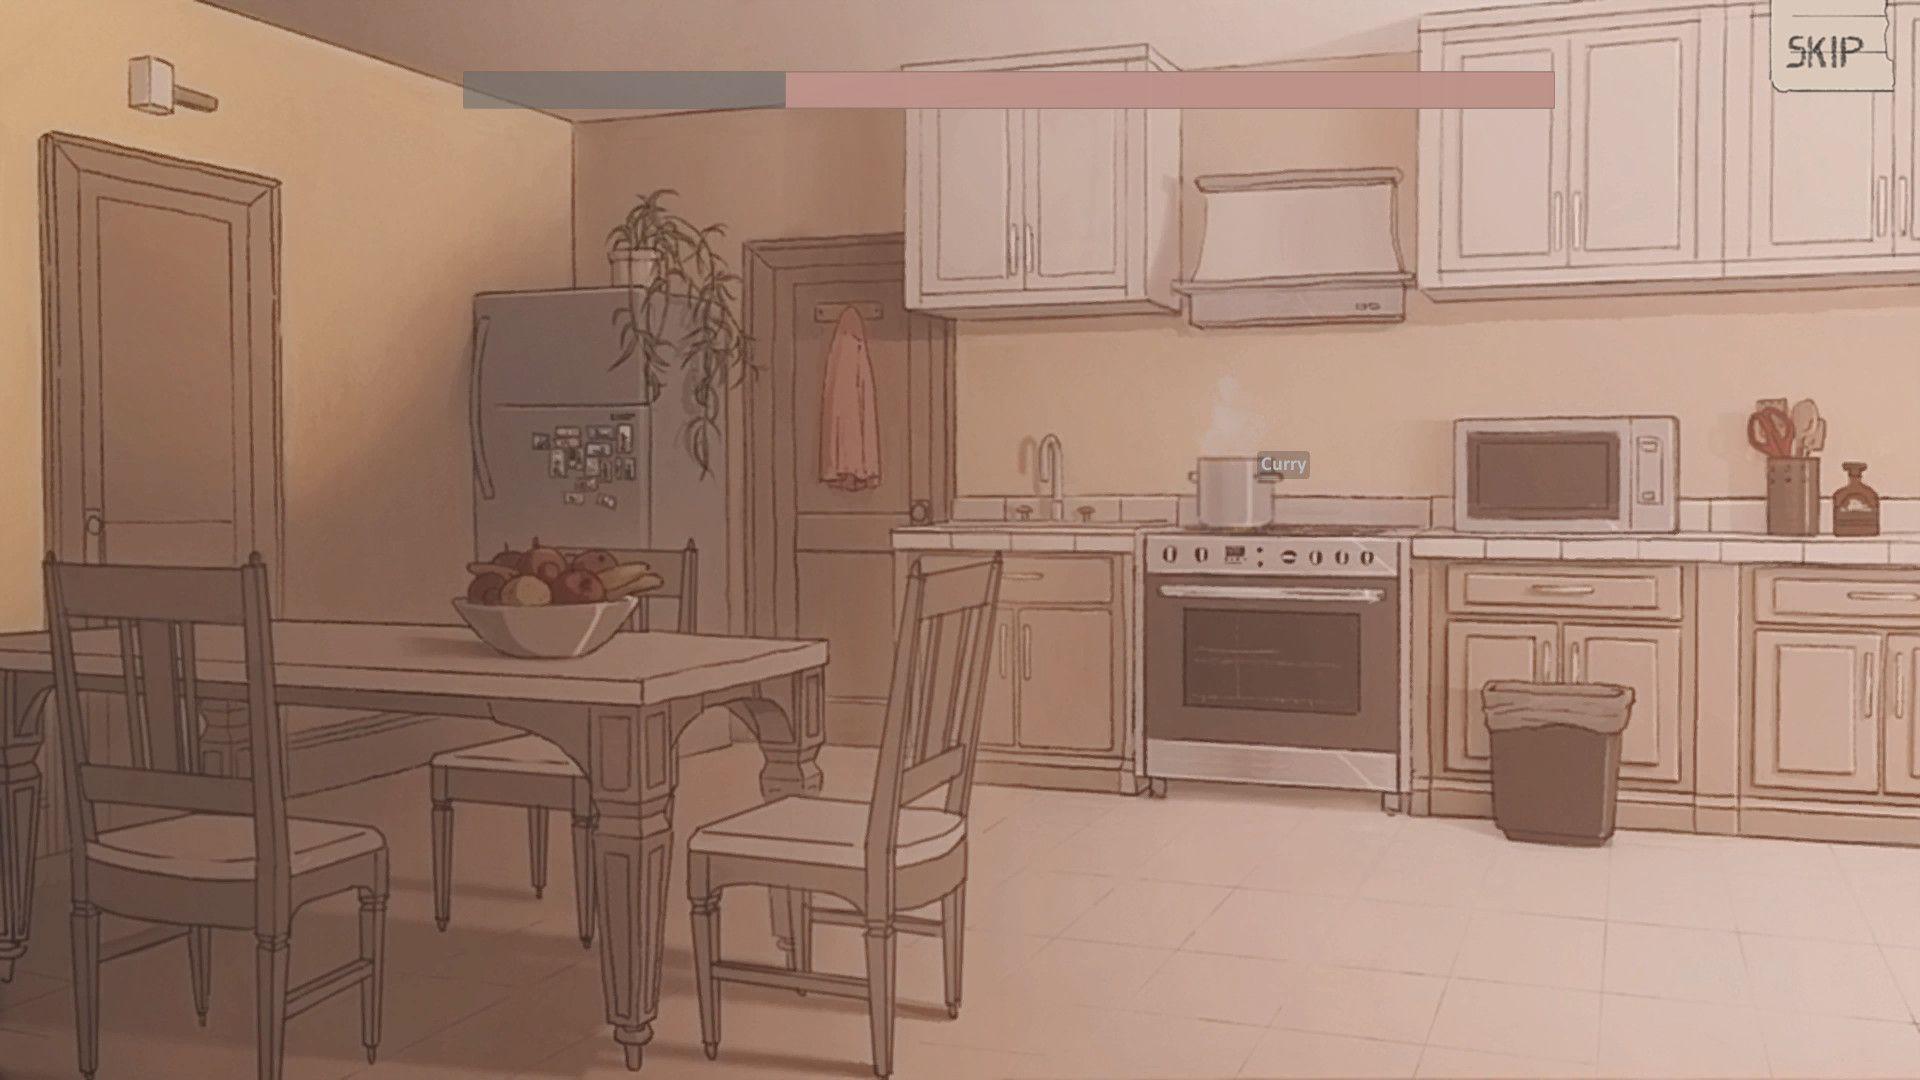 Anime kitchen wallpapers: Người yêu thích truyện tranh Nhật Bản sẽ không muốn bỏ qua những hình nền về bếp trong phong cách anime! Những tuyệt tác nghệ thuật với màu sắc tươi sáng và họa tiết động đậm chất xoay quanh các món ăn ưa thích của nhân vật sẽ khiến bạn phấn khích. Translation: Anime fans won\'t want to miss out on the kitchen wallpapers in anime style! These artistic masterpieces with vibrant colors and lively patterns revolving around the favorite foods of characters will make you excited.